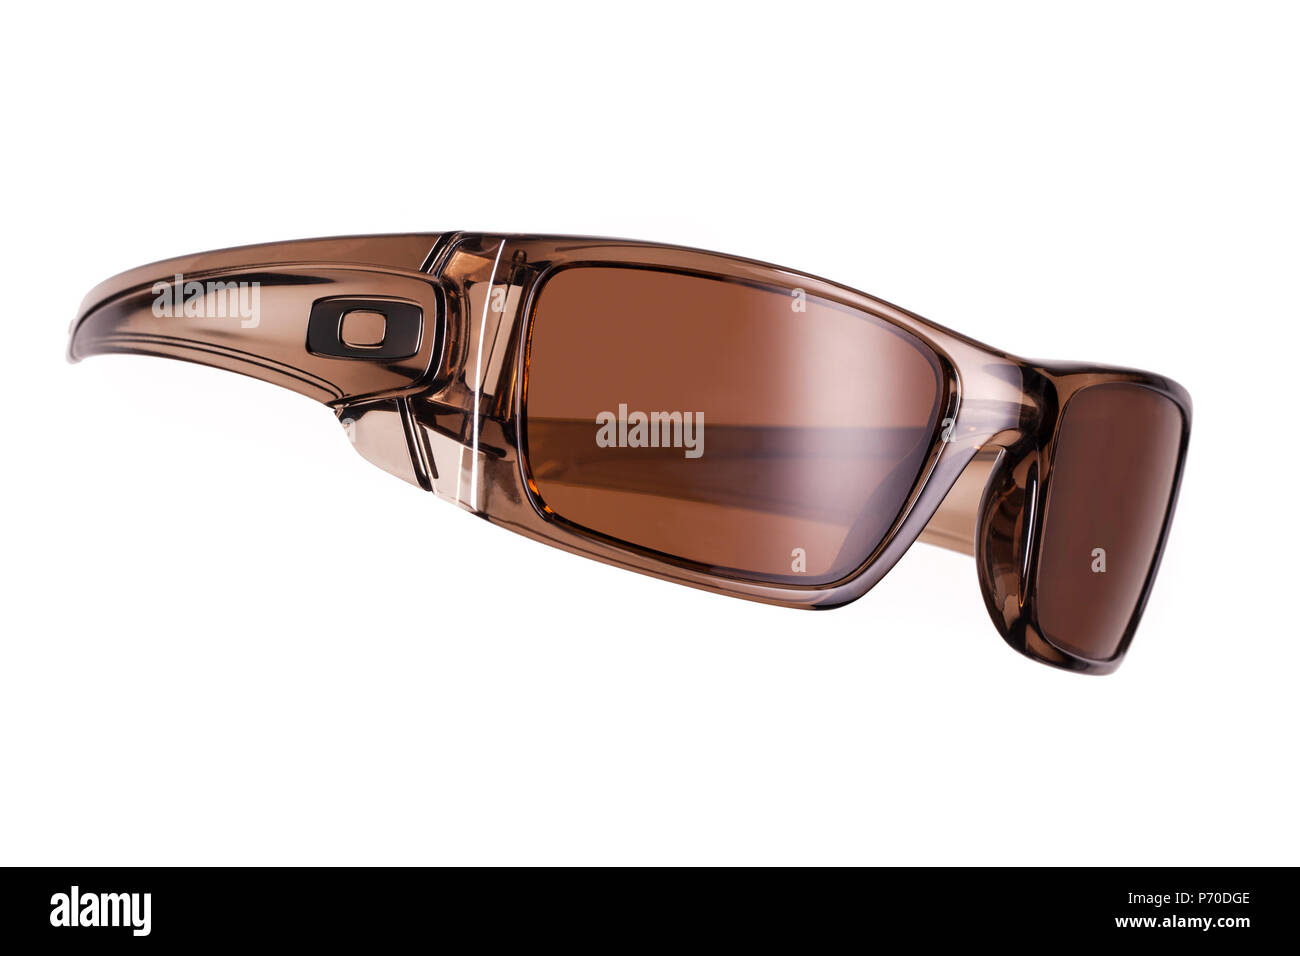 Oakley Fuel Cell lunettes fumée brun sur un fond blanc Banque D'Images